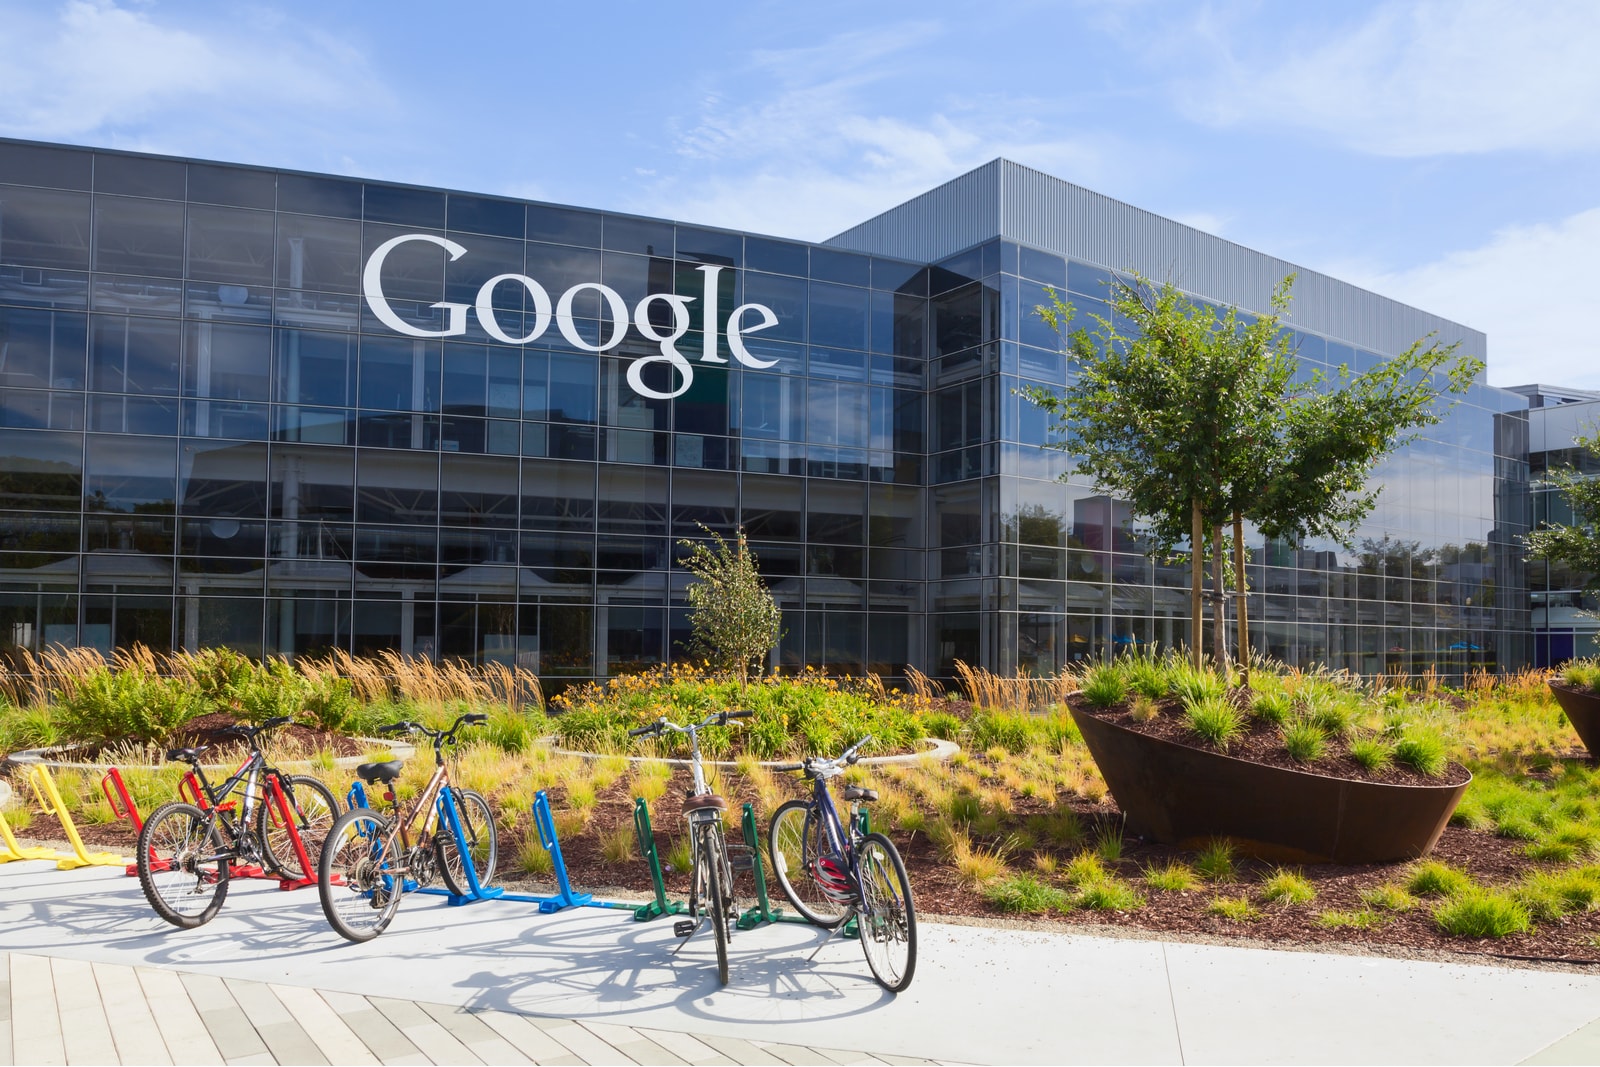 غوغل تزيل 8 تطبيقات أندرويد جديدة من منصاتها وتطالب المستخدمين بحذفها وحظرها واصفة إياها بالخطرة تعرف إليها 